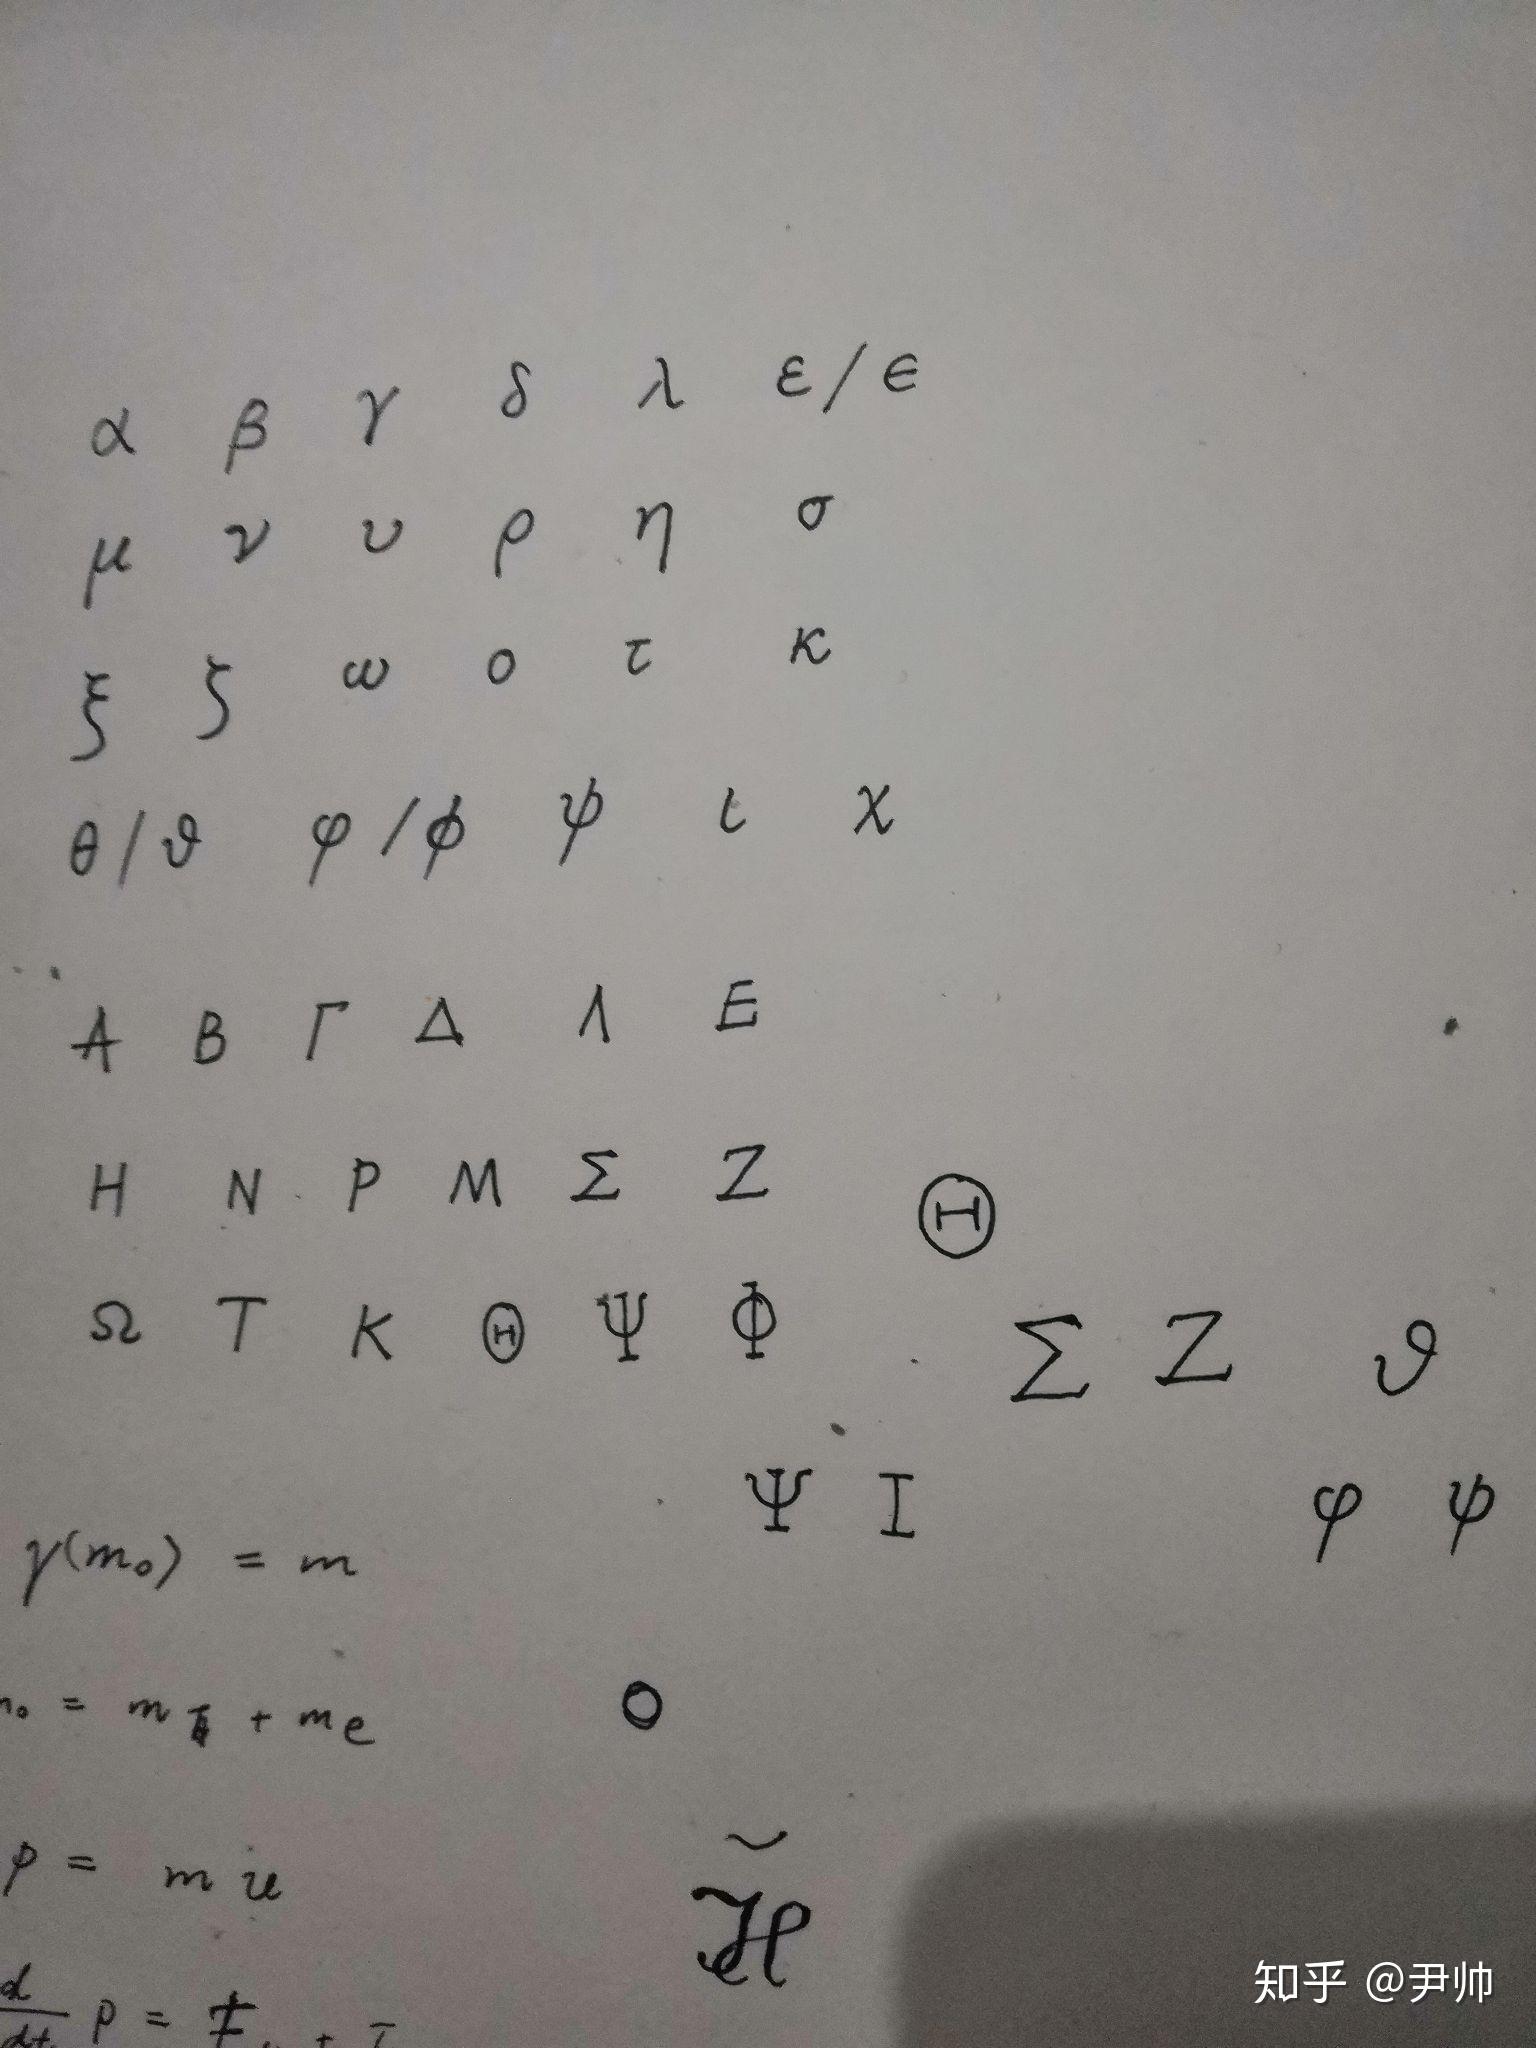 怎么写希腊字母的手写体比较好看? 